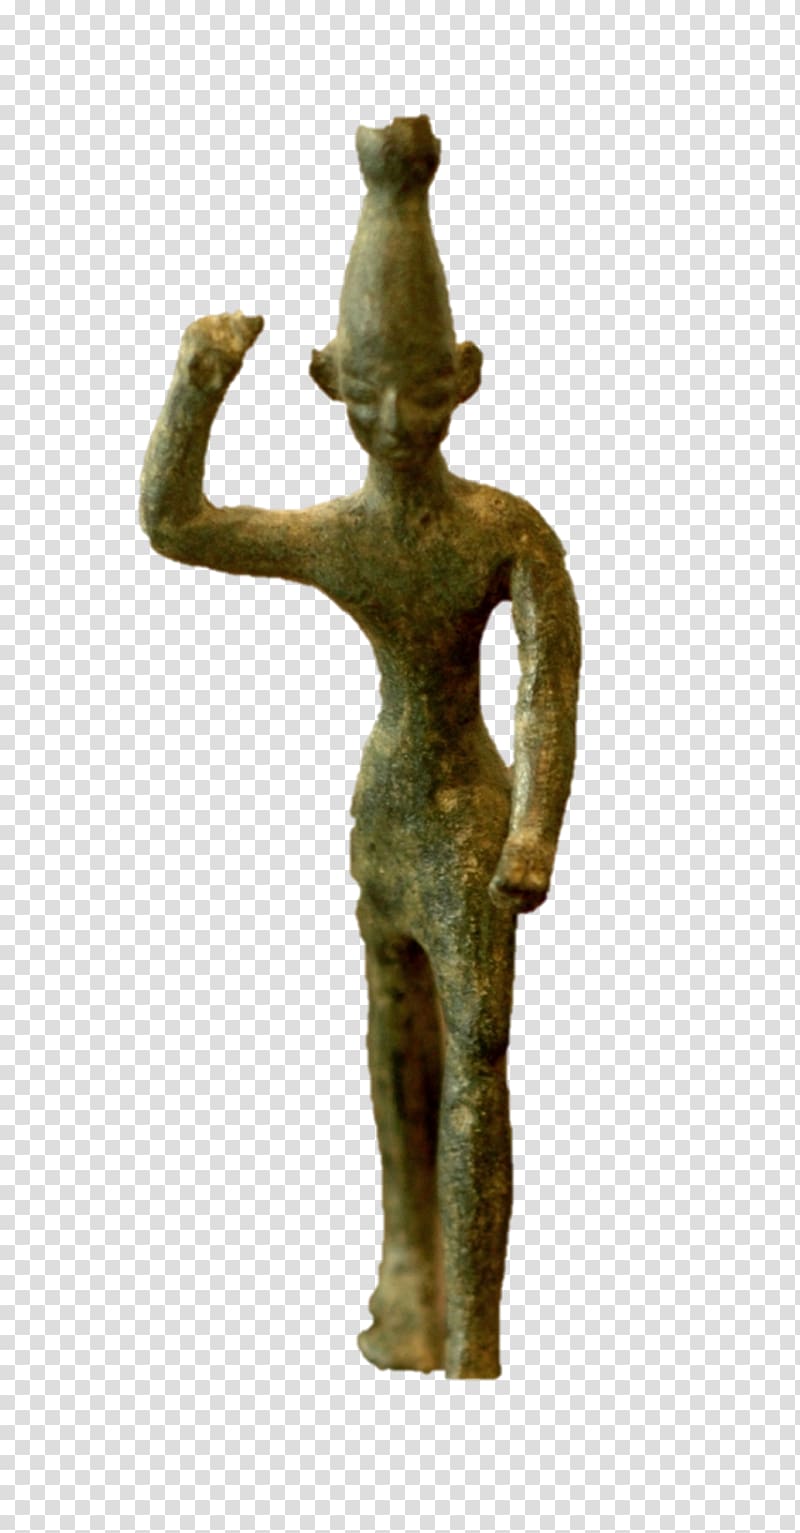 Musée du Louvre Polytheism Bronze sculpture Monotheism Religion, others transparent background PNG clipart